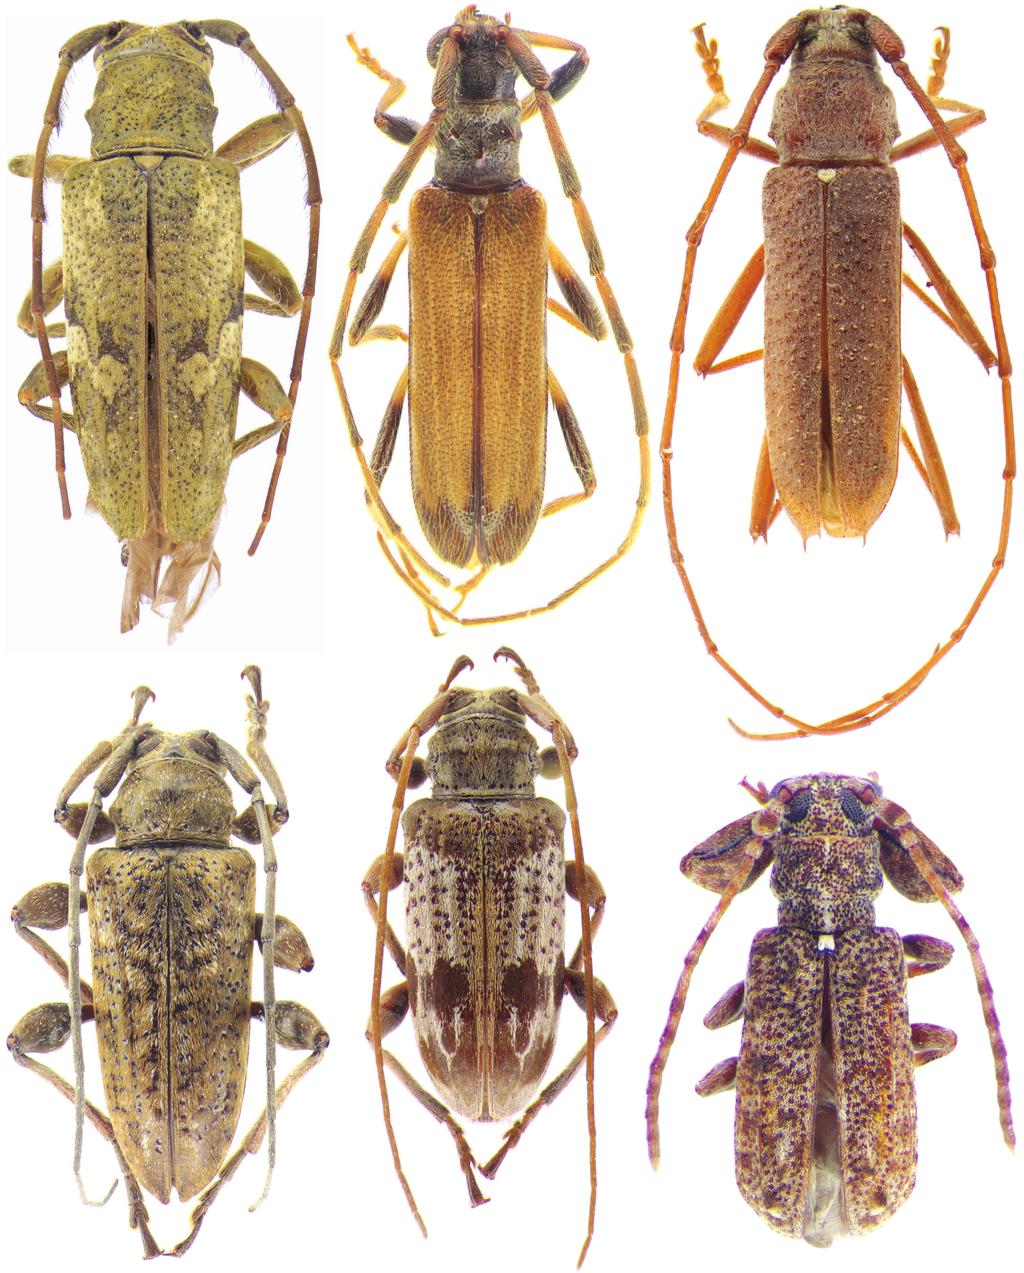 Novos táxons e novos registros sobre Cerambycidae Neotropicais Macho. Tegumento castanho-avermelhado.